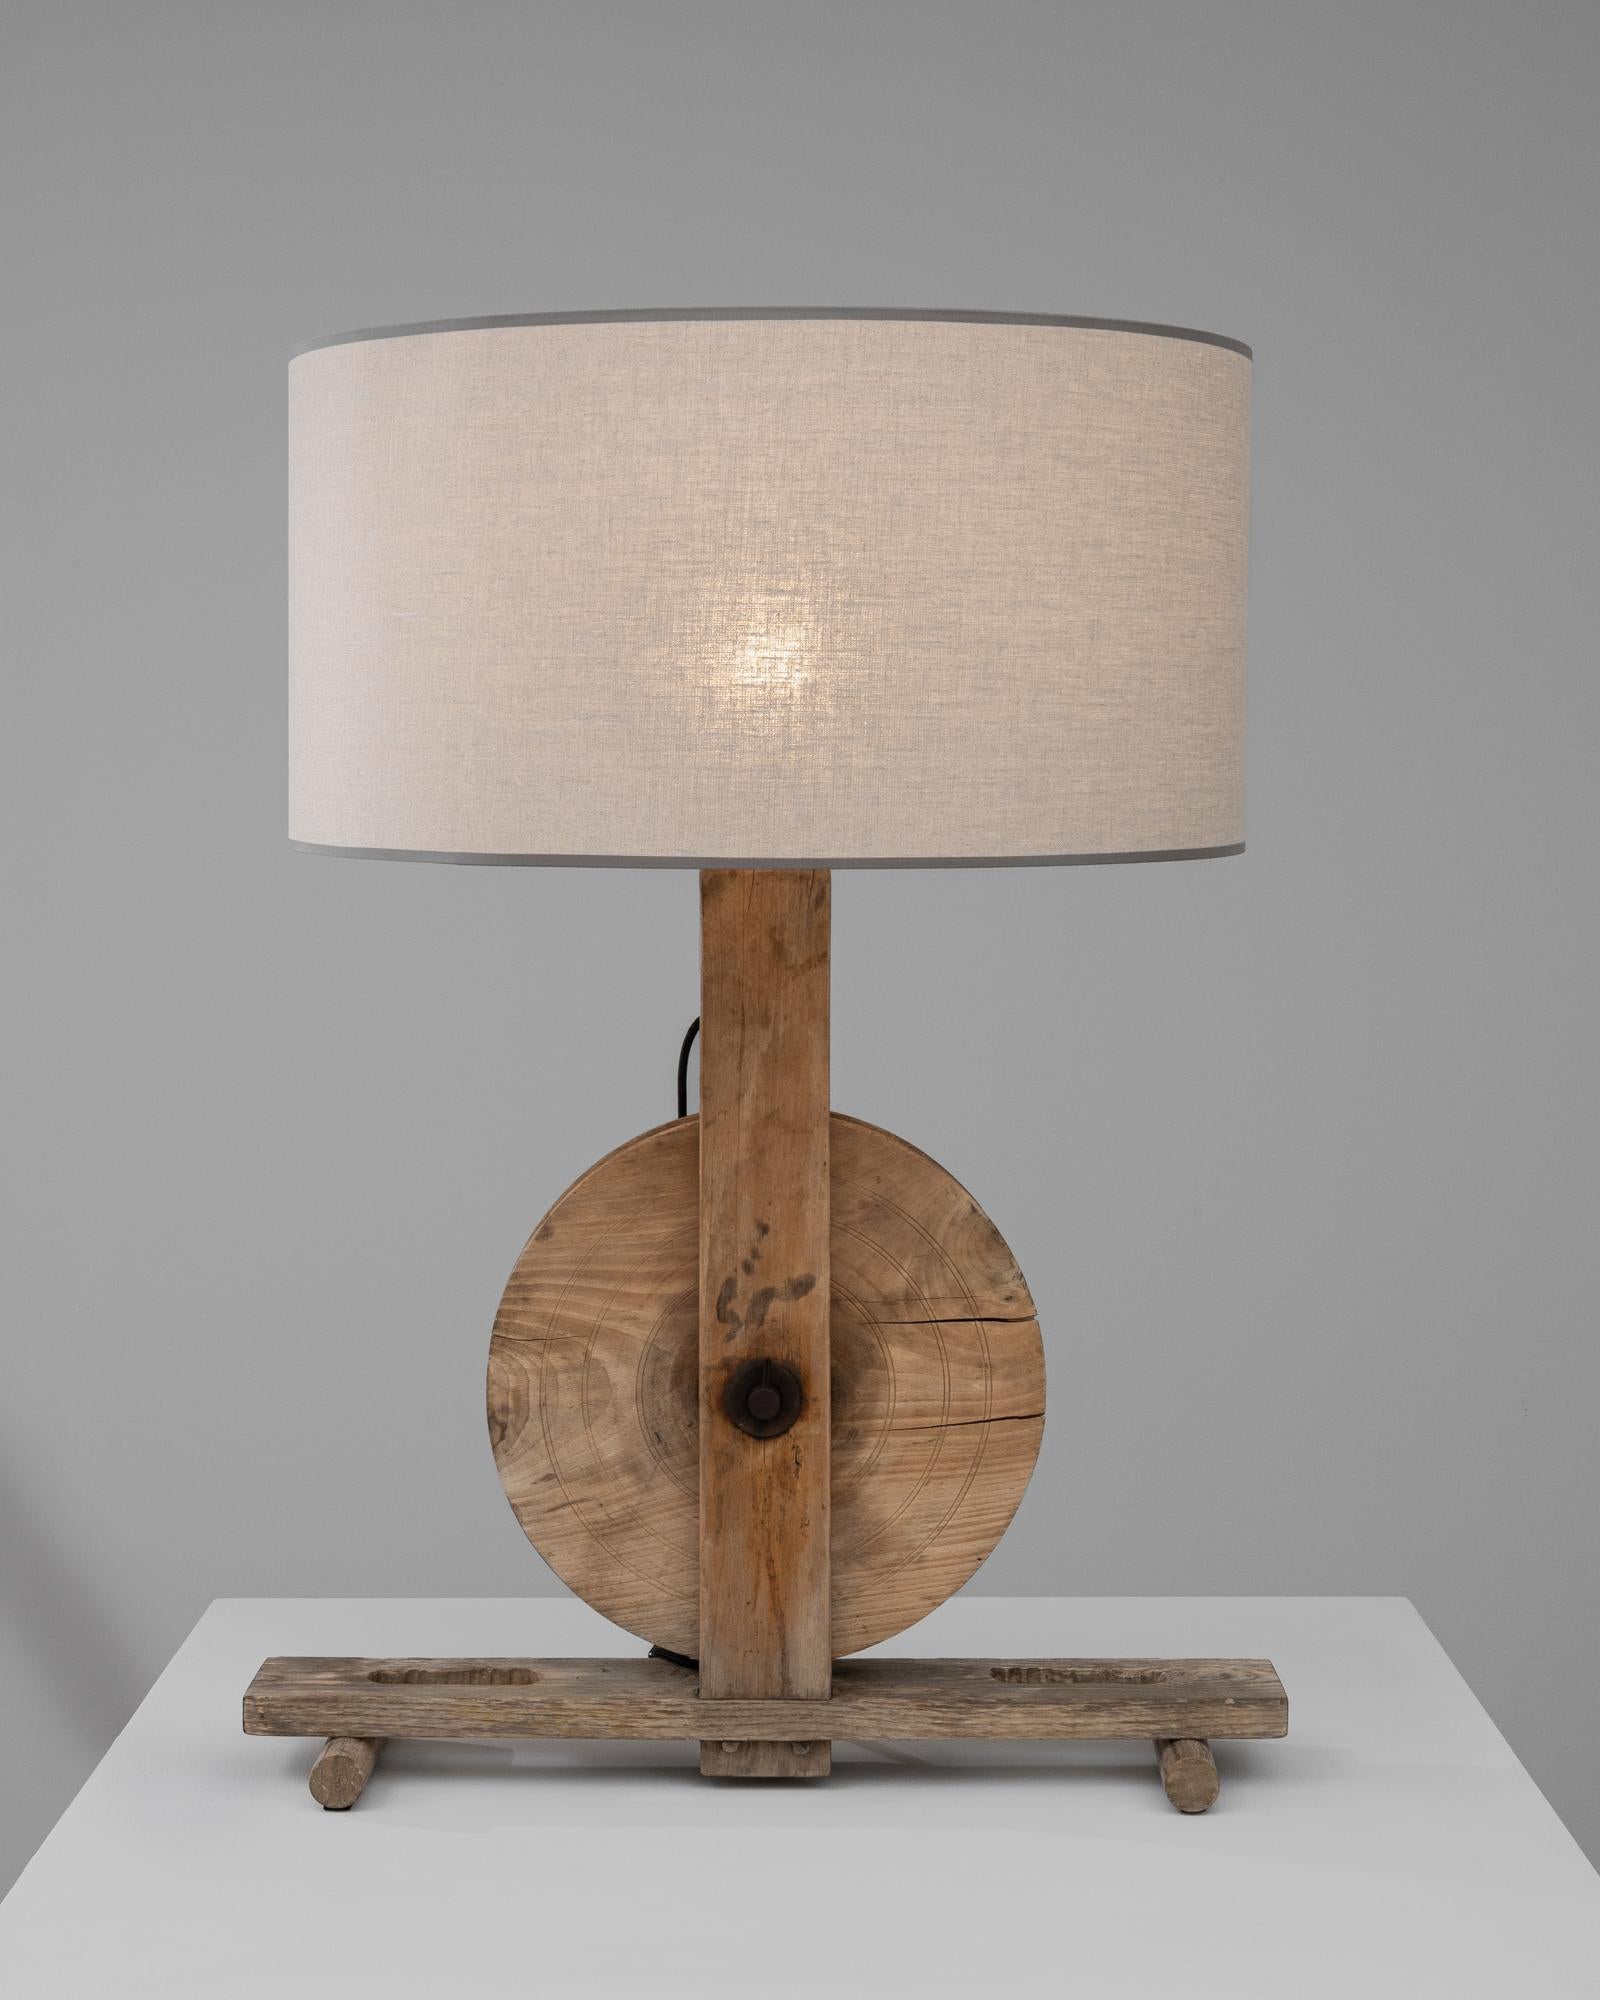 Verleihen Sie Ihrem Wohnbereich den rustikalen Charme dieser einzigartigen britischen Tischlampe aus dem frühen 20. Jahrhundert, bei der Funktionalität auf handwerkliches Können trifft. Der aus altem Holz geschnitzte Sockel mit all seinen